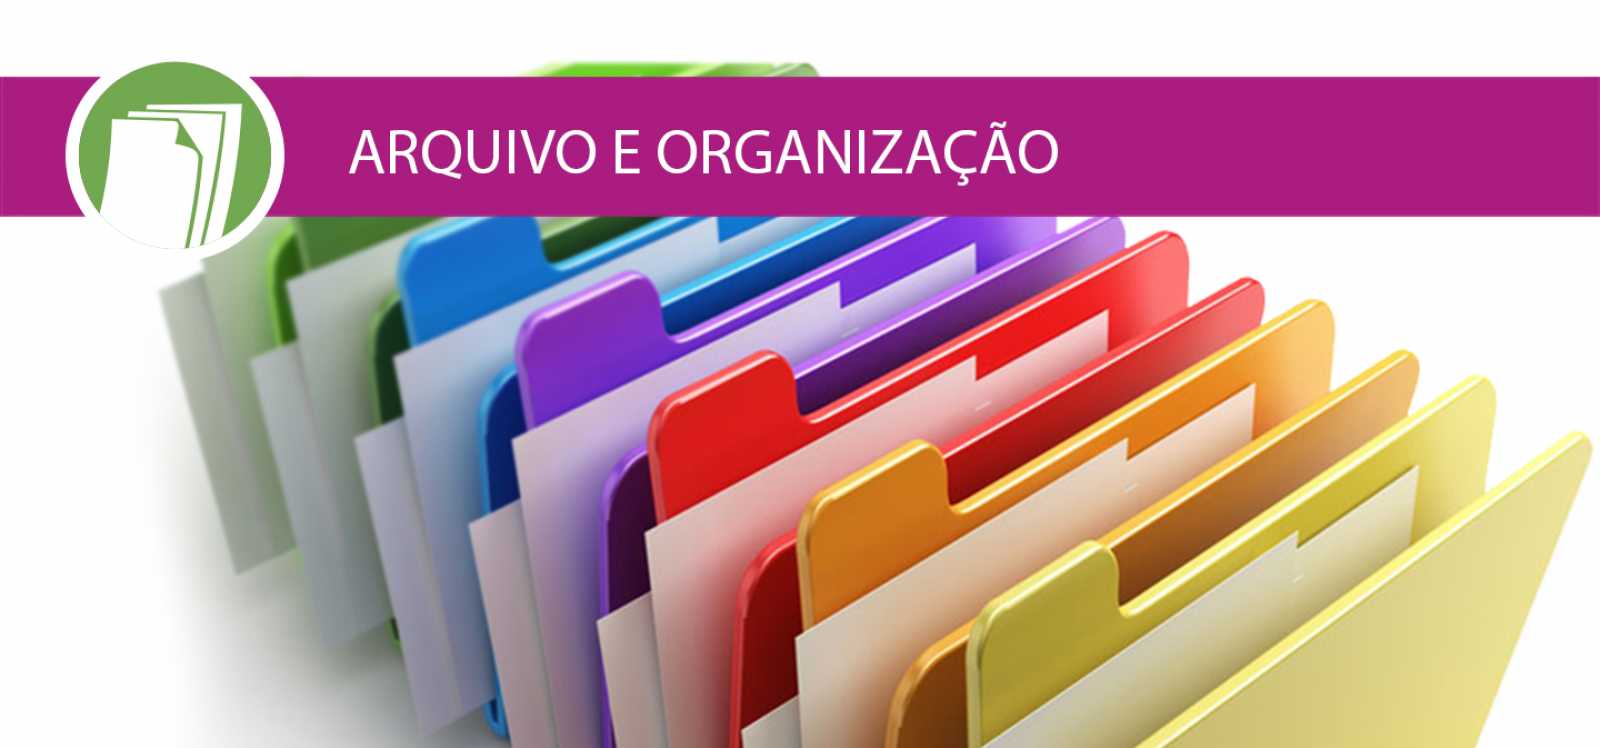 Arquivo e Organização